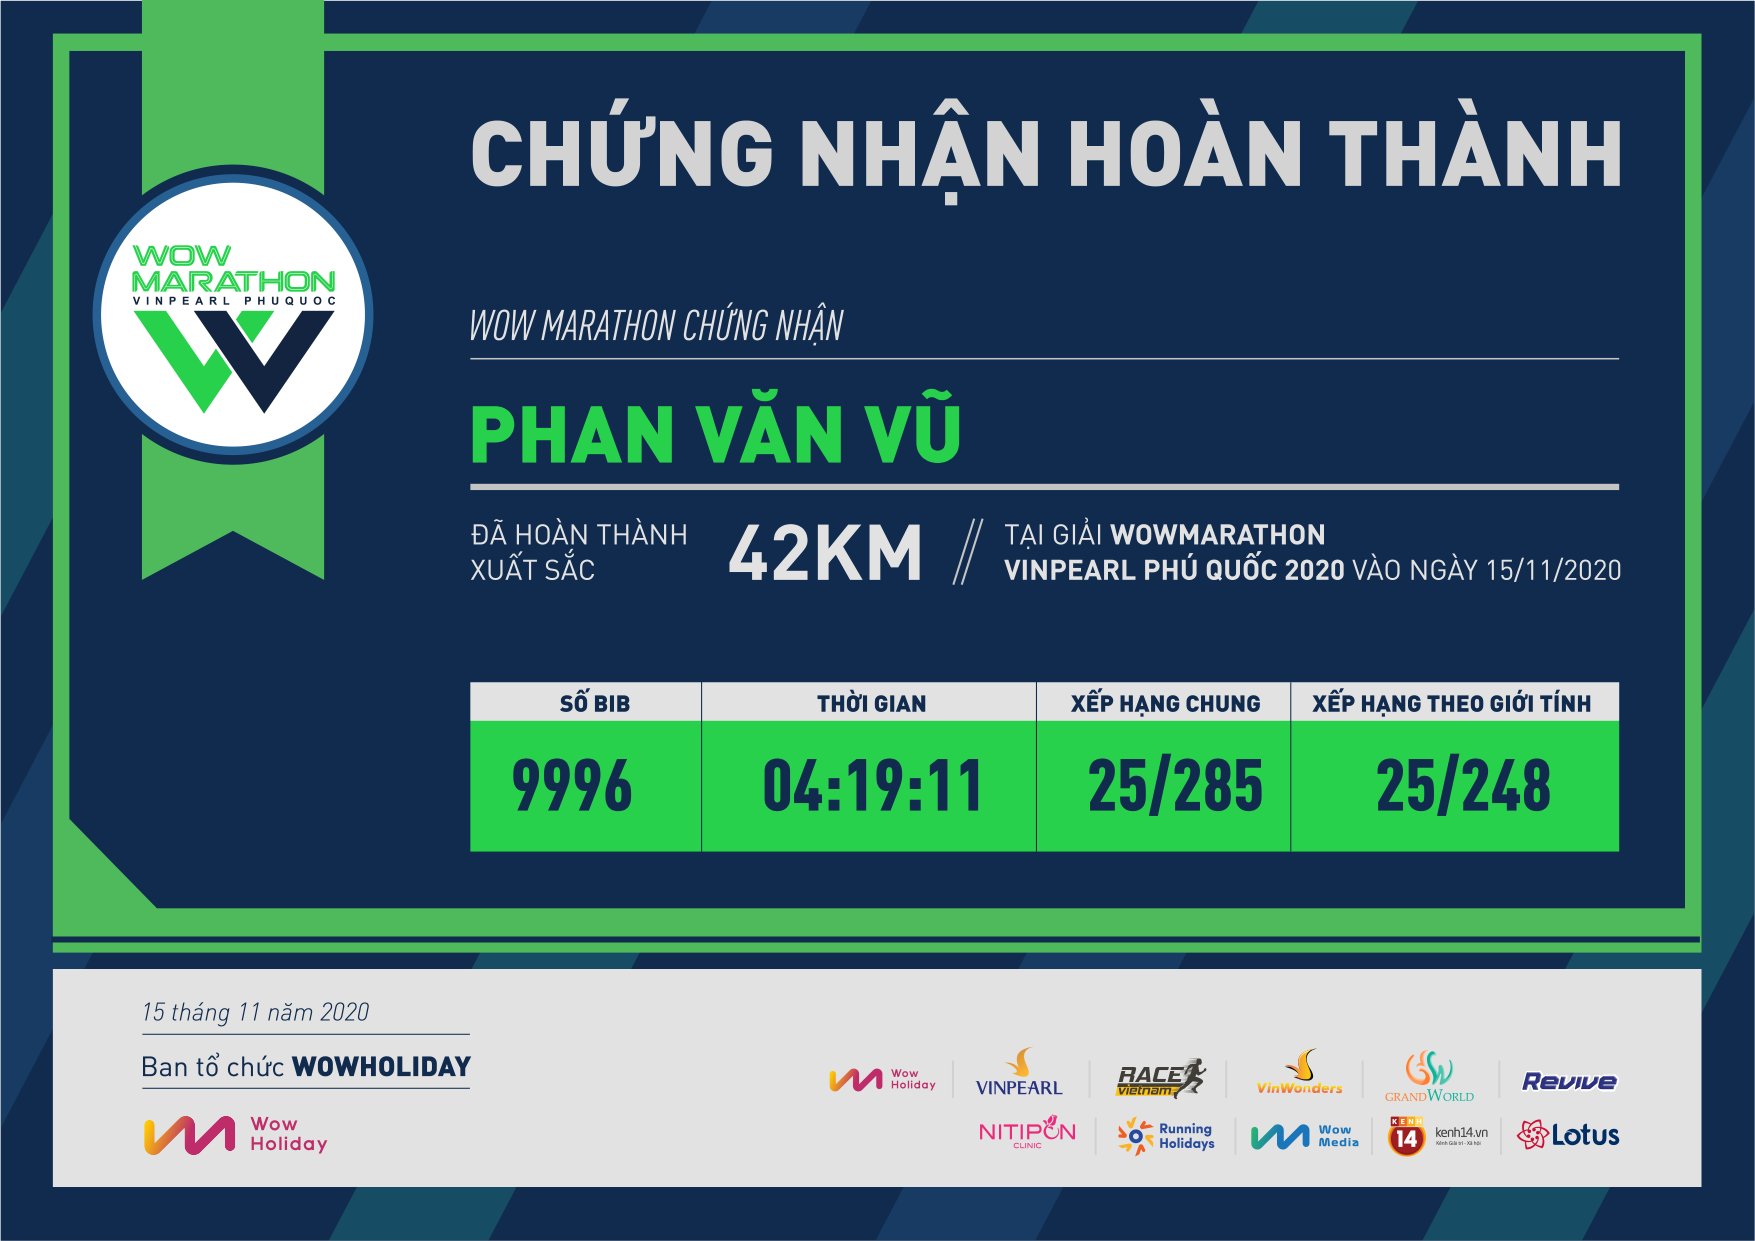 9996 - Phan Văn Vũ